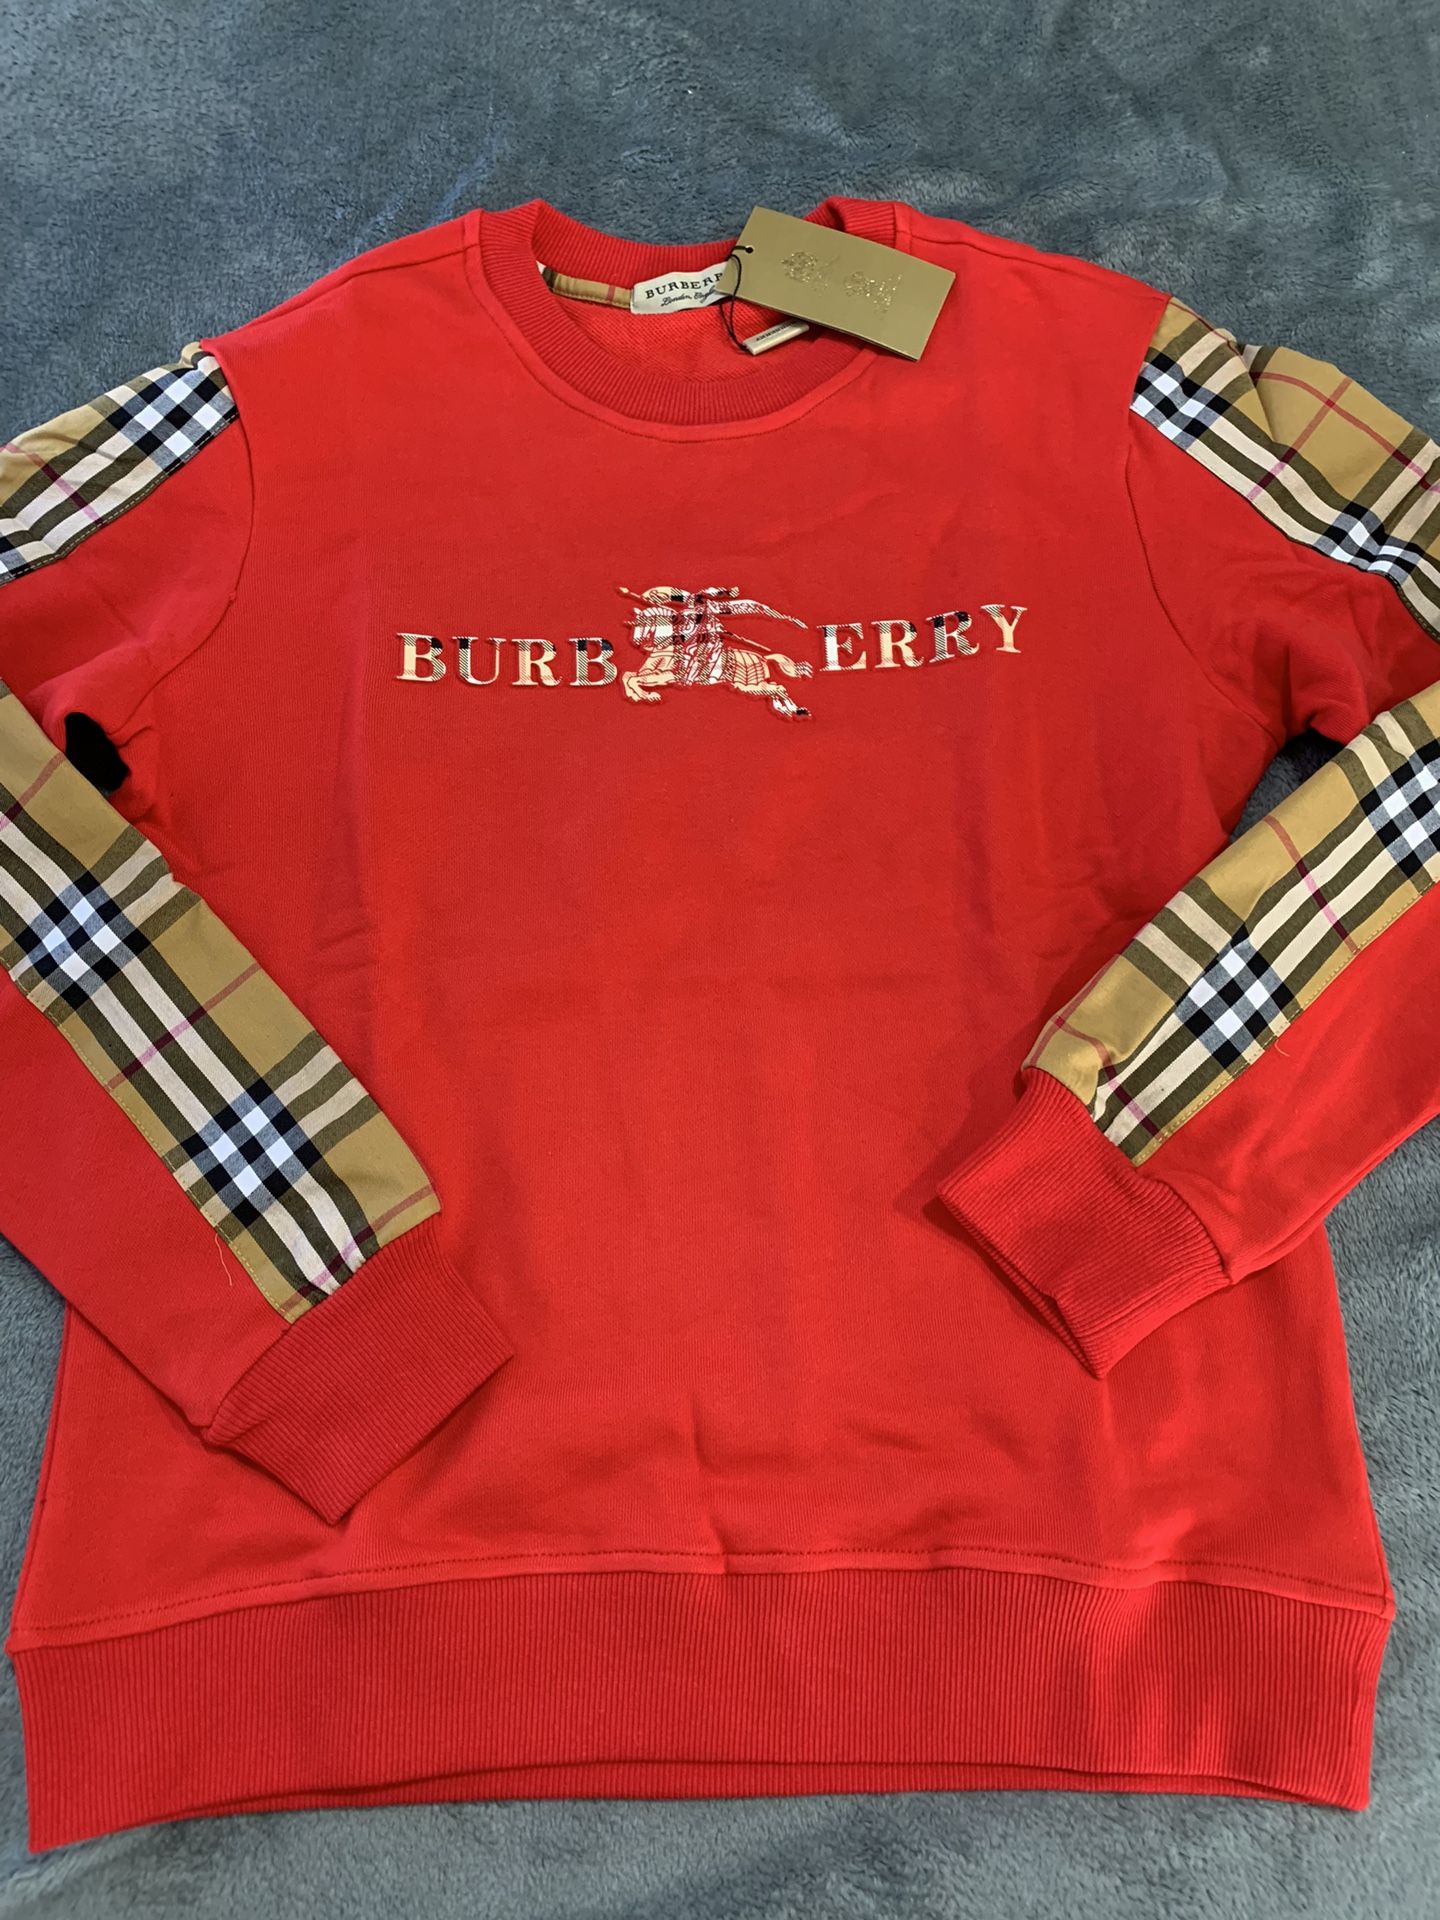 Red Burberry Sweater   M,l,xl,xxl,3X 